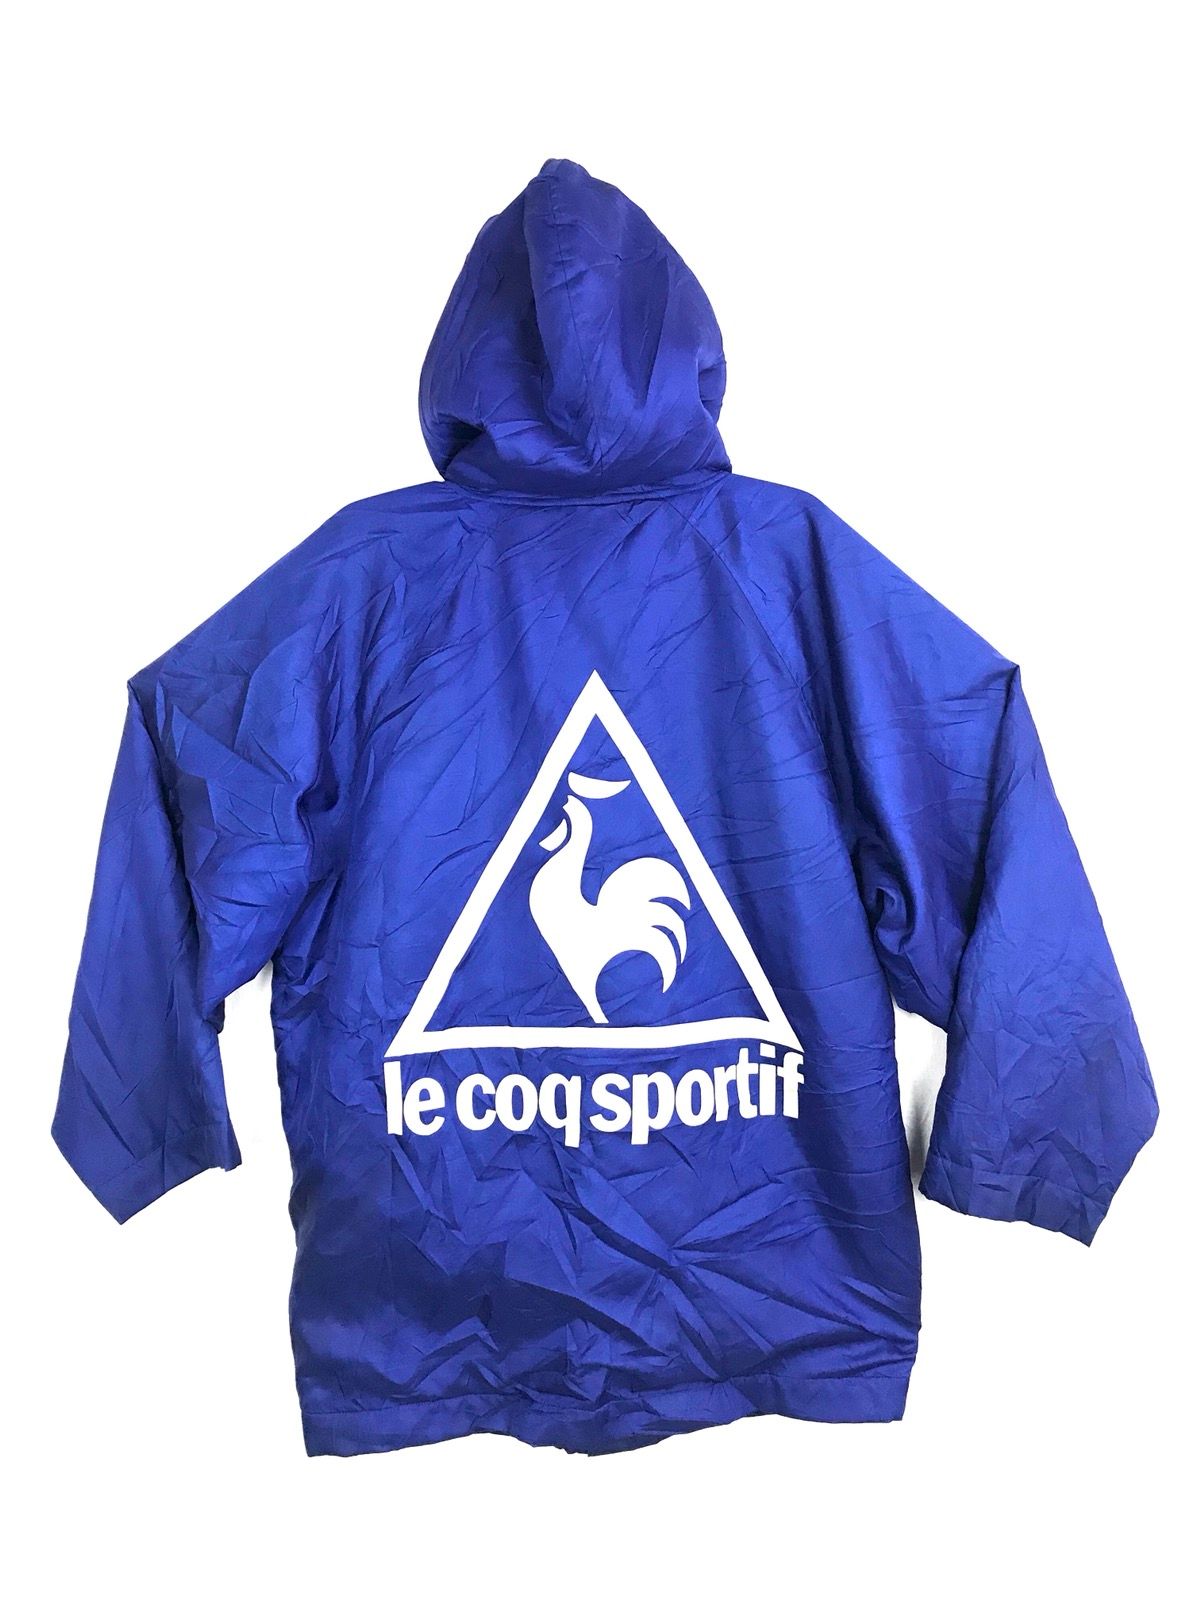 Vintage Le Coq Sportif Big Logo Parkas Jacket Hoodie Sherpa Inner | Grailed